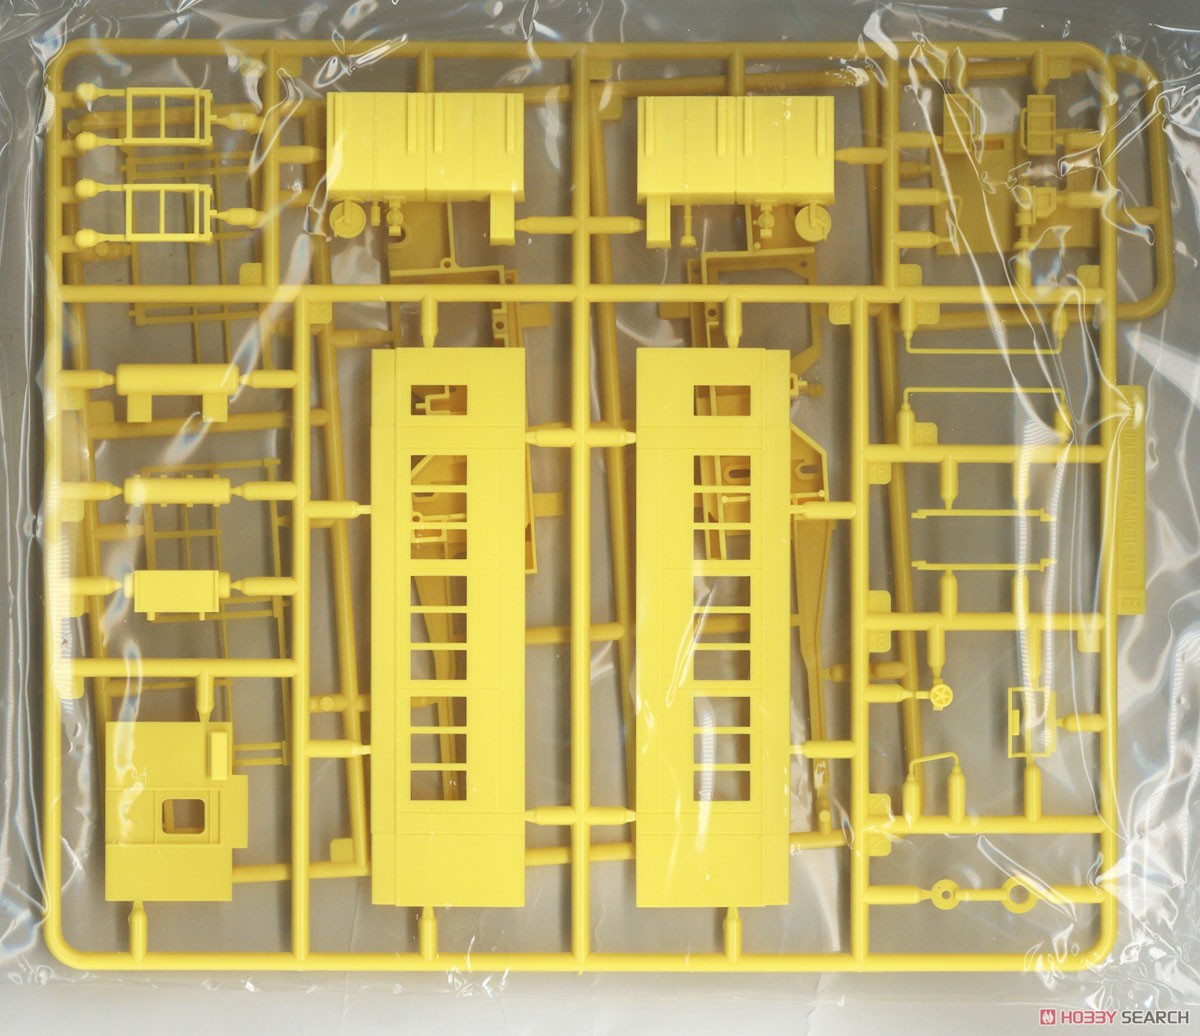 1/80(HO) Multiple Tie Tamper 09-16 (Plasser & Theurer Genuine Color) Display Kit (Unassembled Kit) (Model Train) Contents2